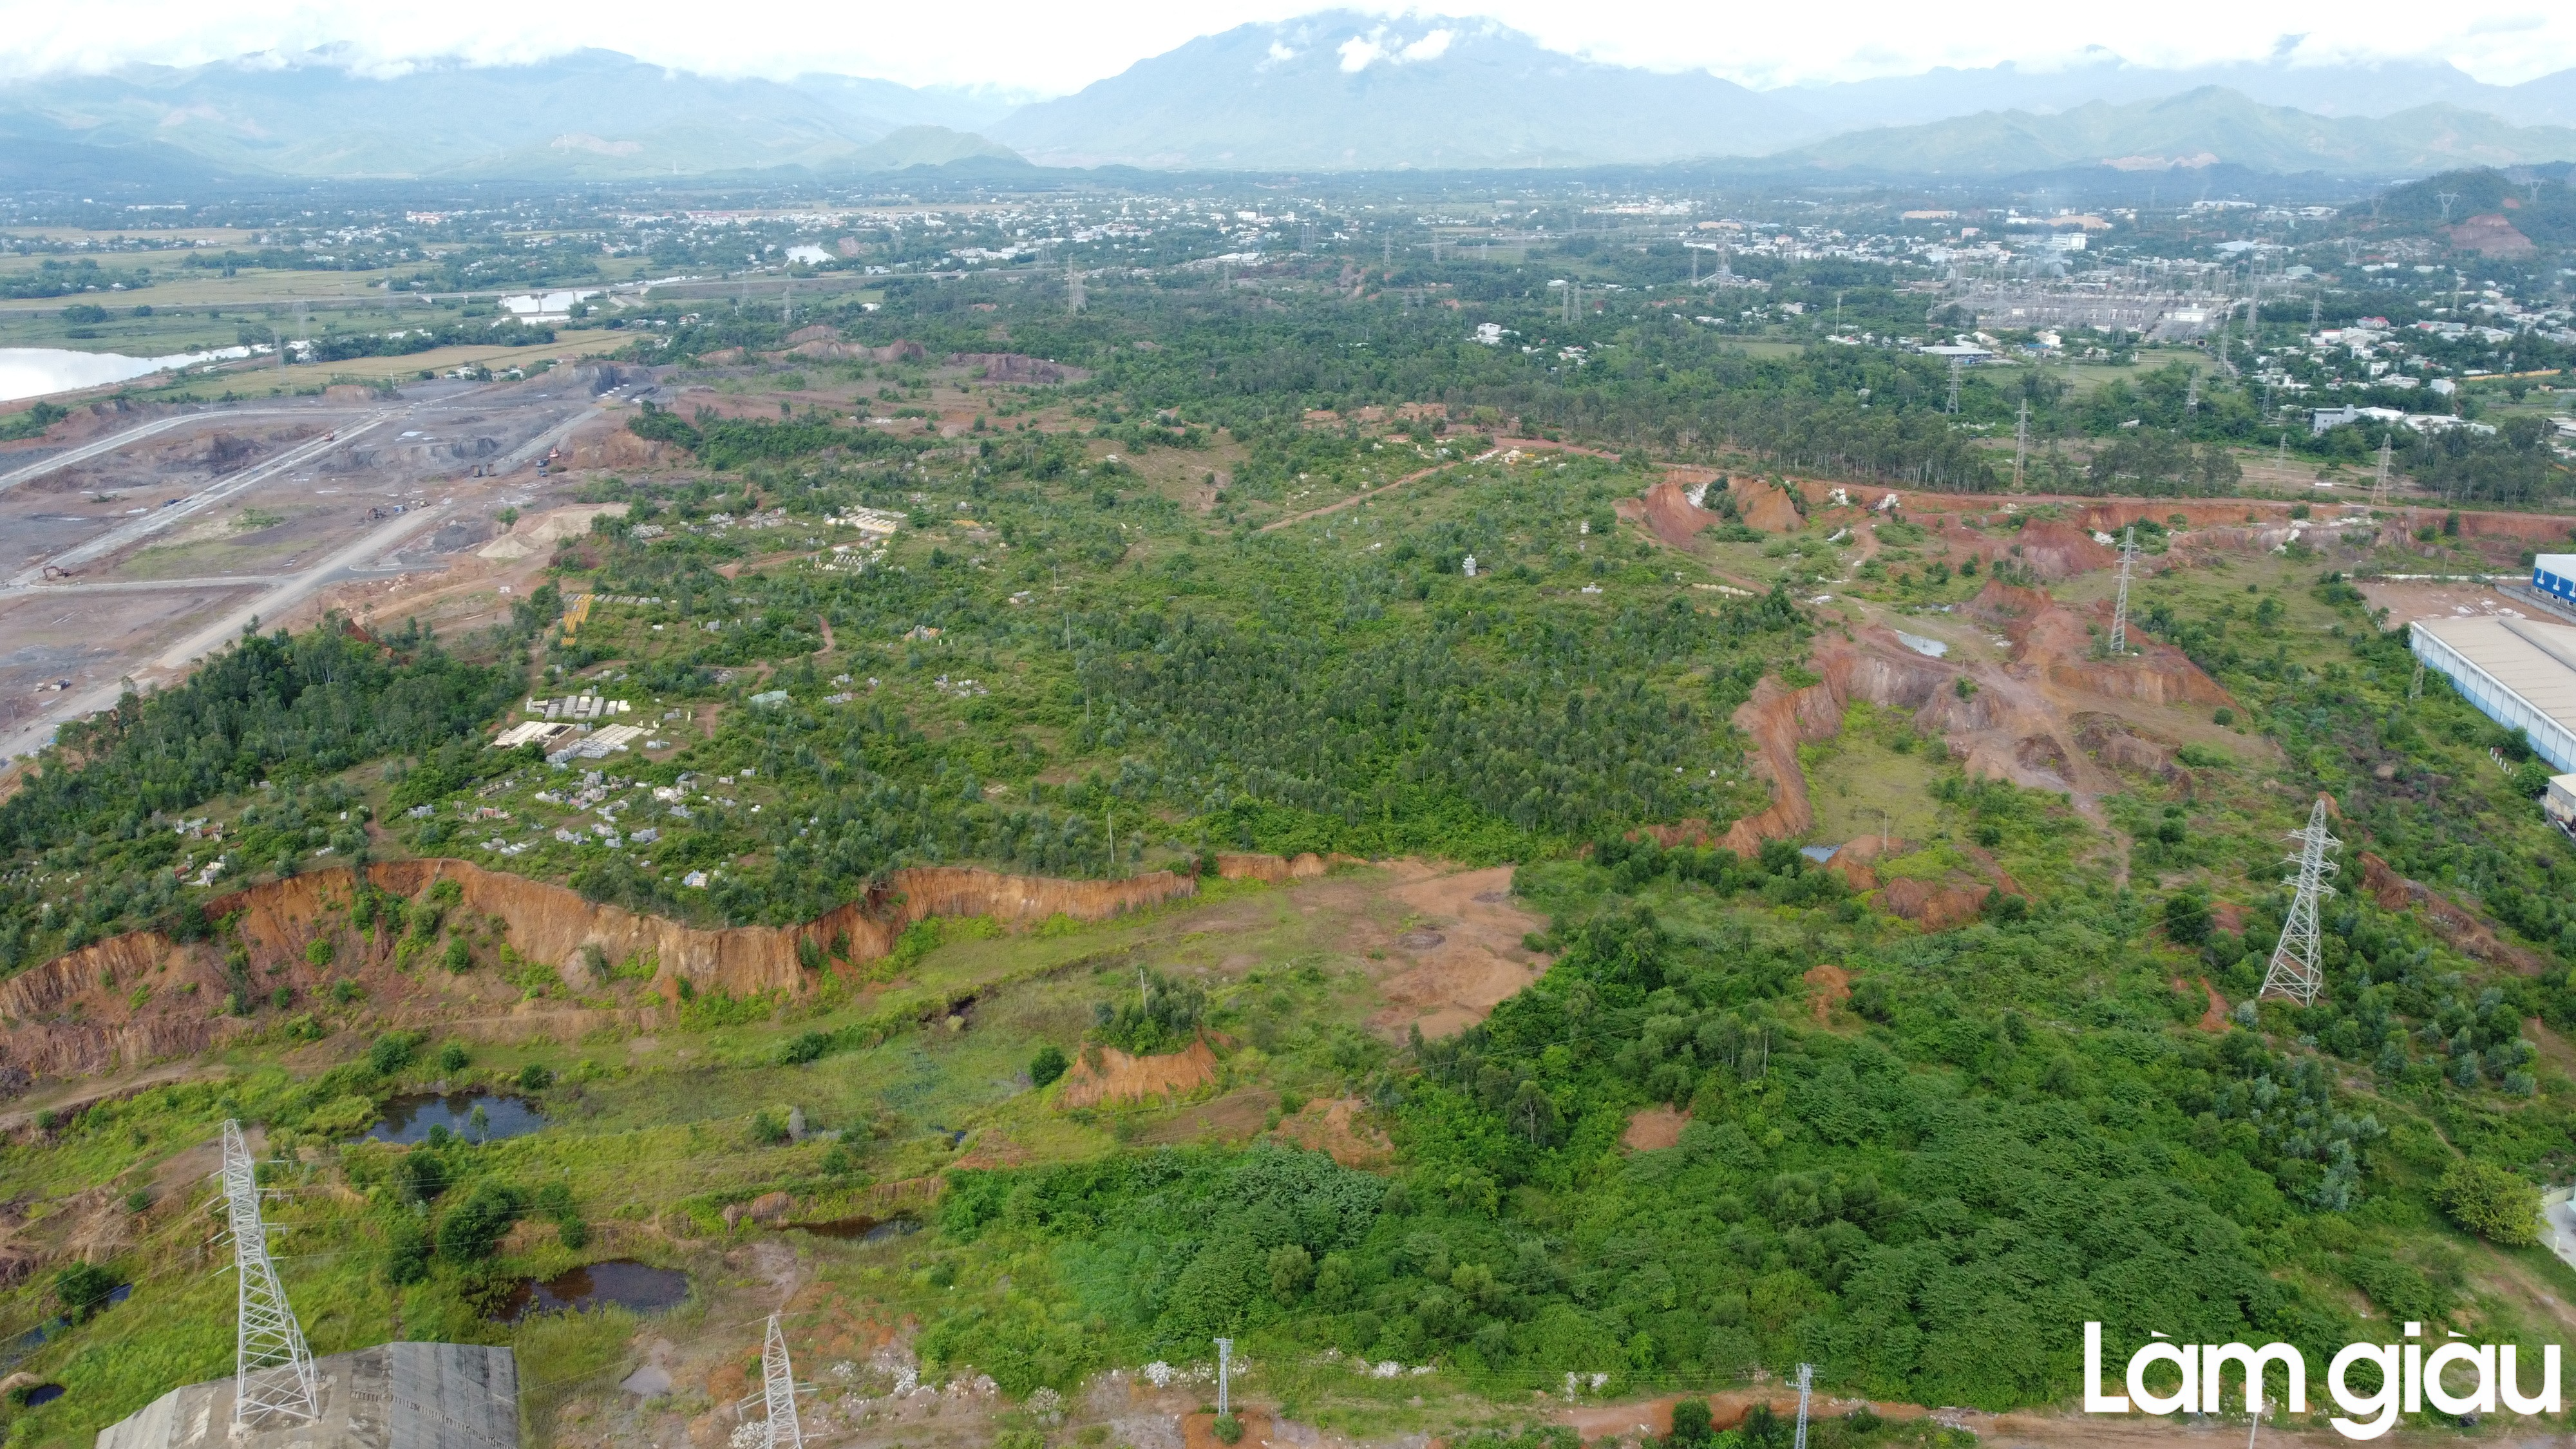 Toàn cảnh khu đất Đà Nẵng quy hoạch, kêu gọi đầu tư Khu công nghiệp Hòa Cầm giai đoạn 2